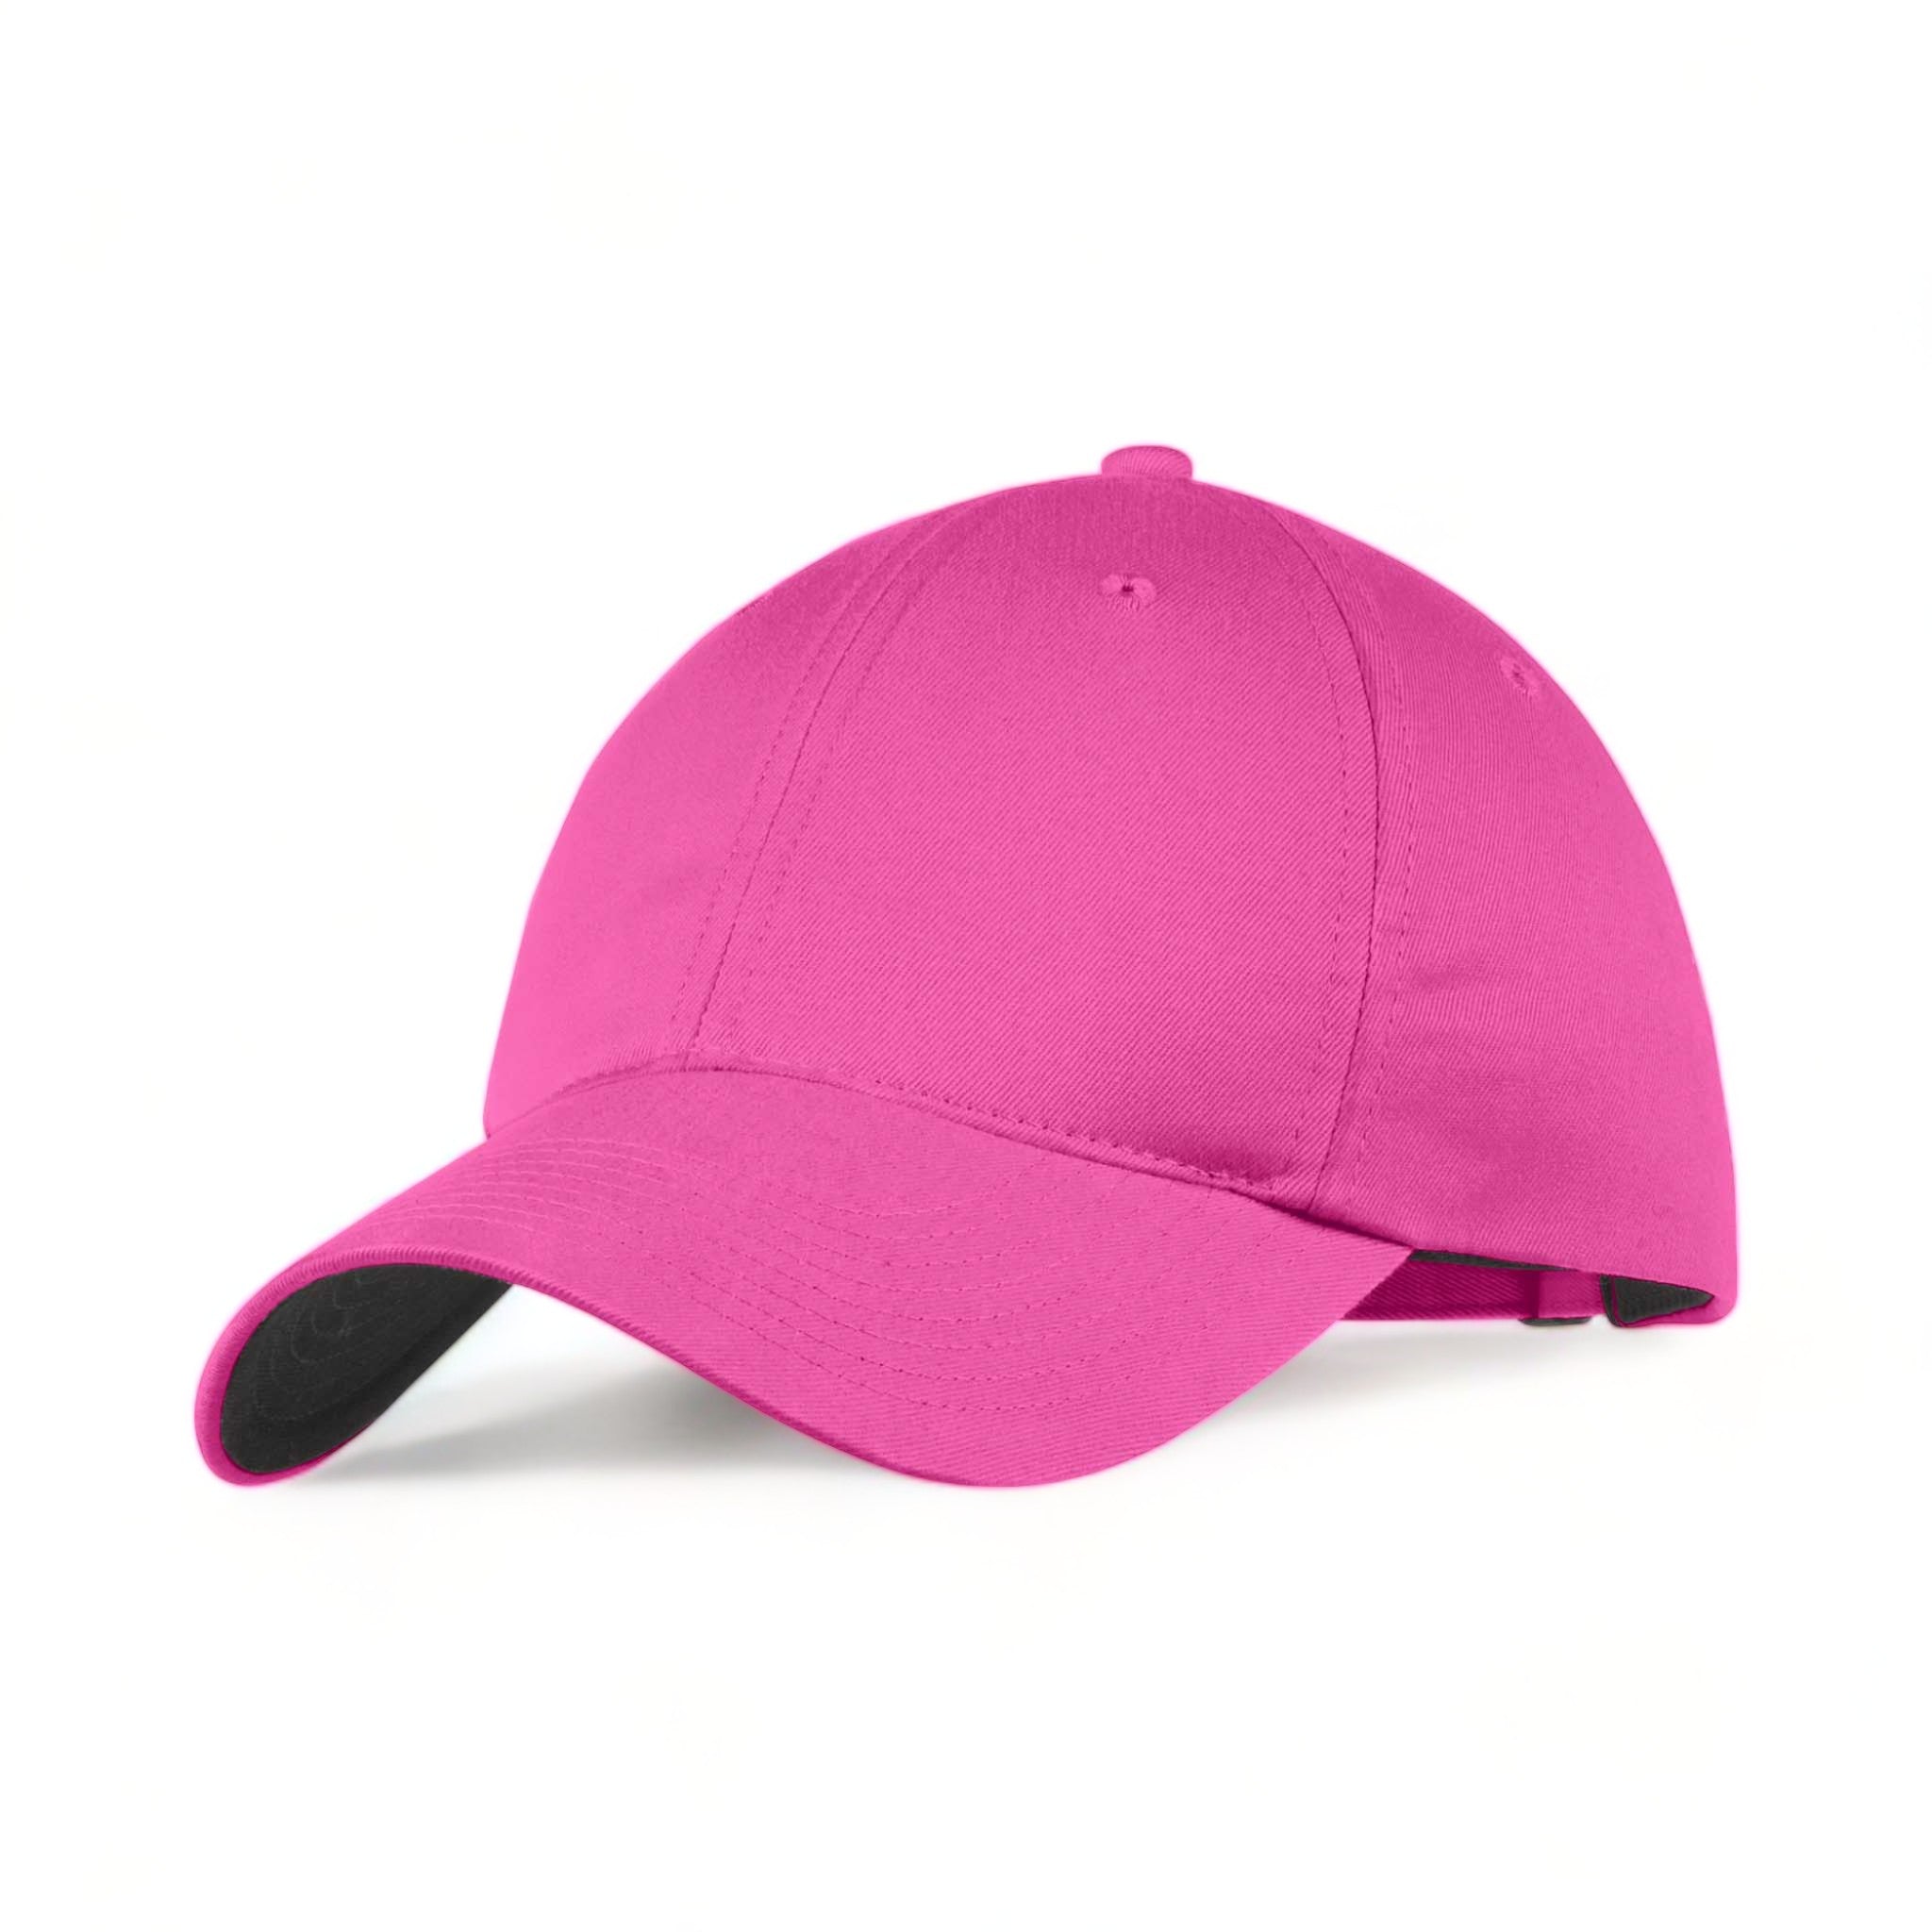 Side view of Nike NKFB6449 custom hat in vivid pink